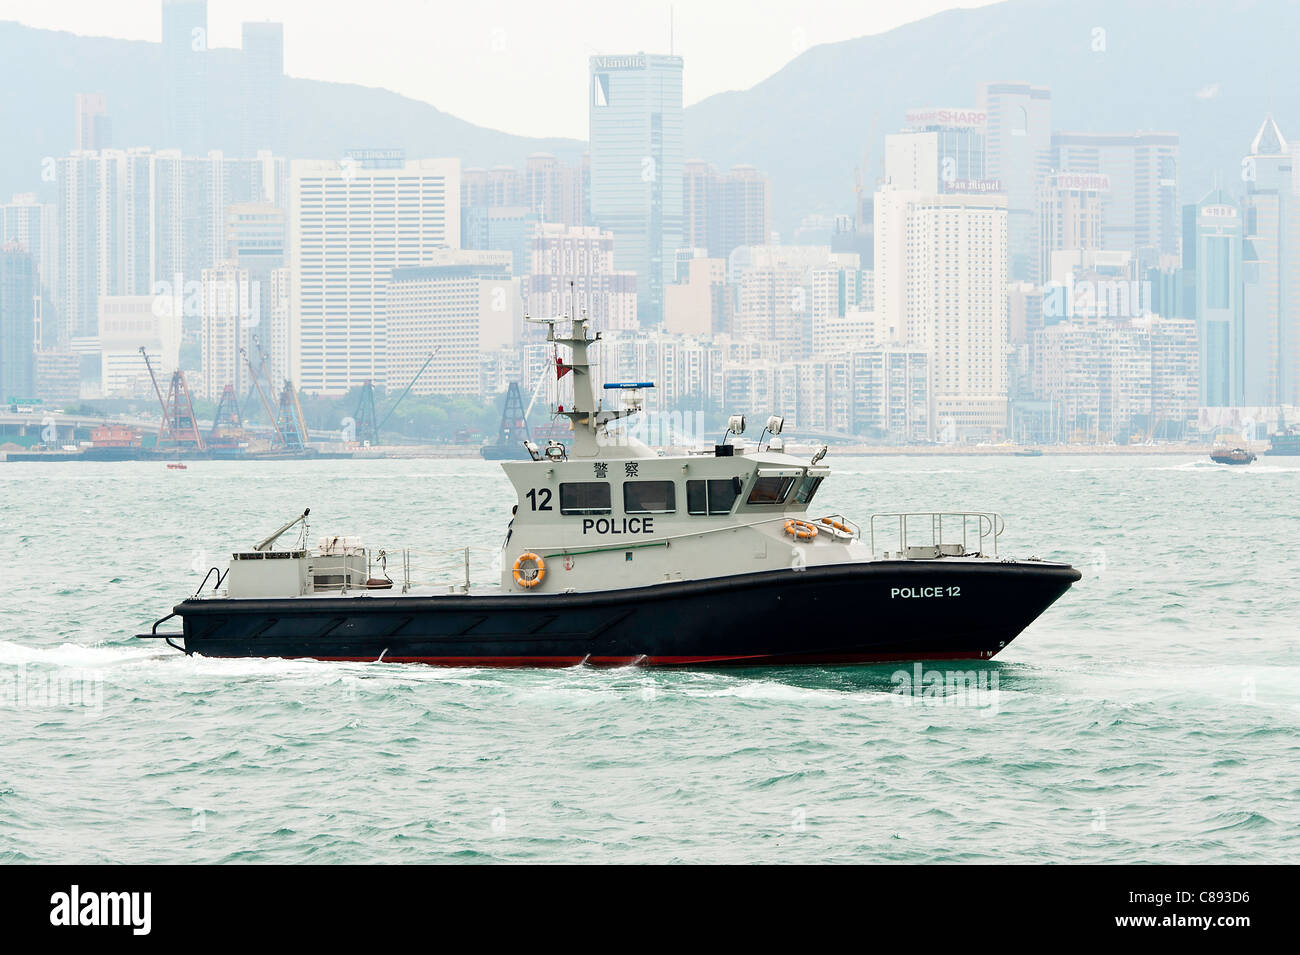 Lancement de la police à la recherche de personne disparue dans la région de Victoria Harbour Kowloon Hong Kong Chine Asie Banque D'Images